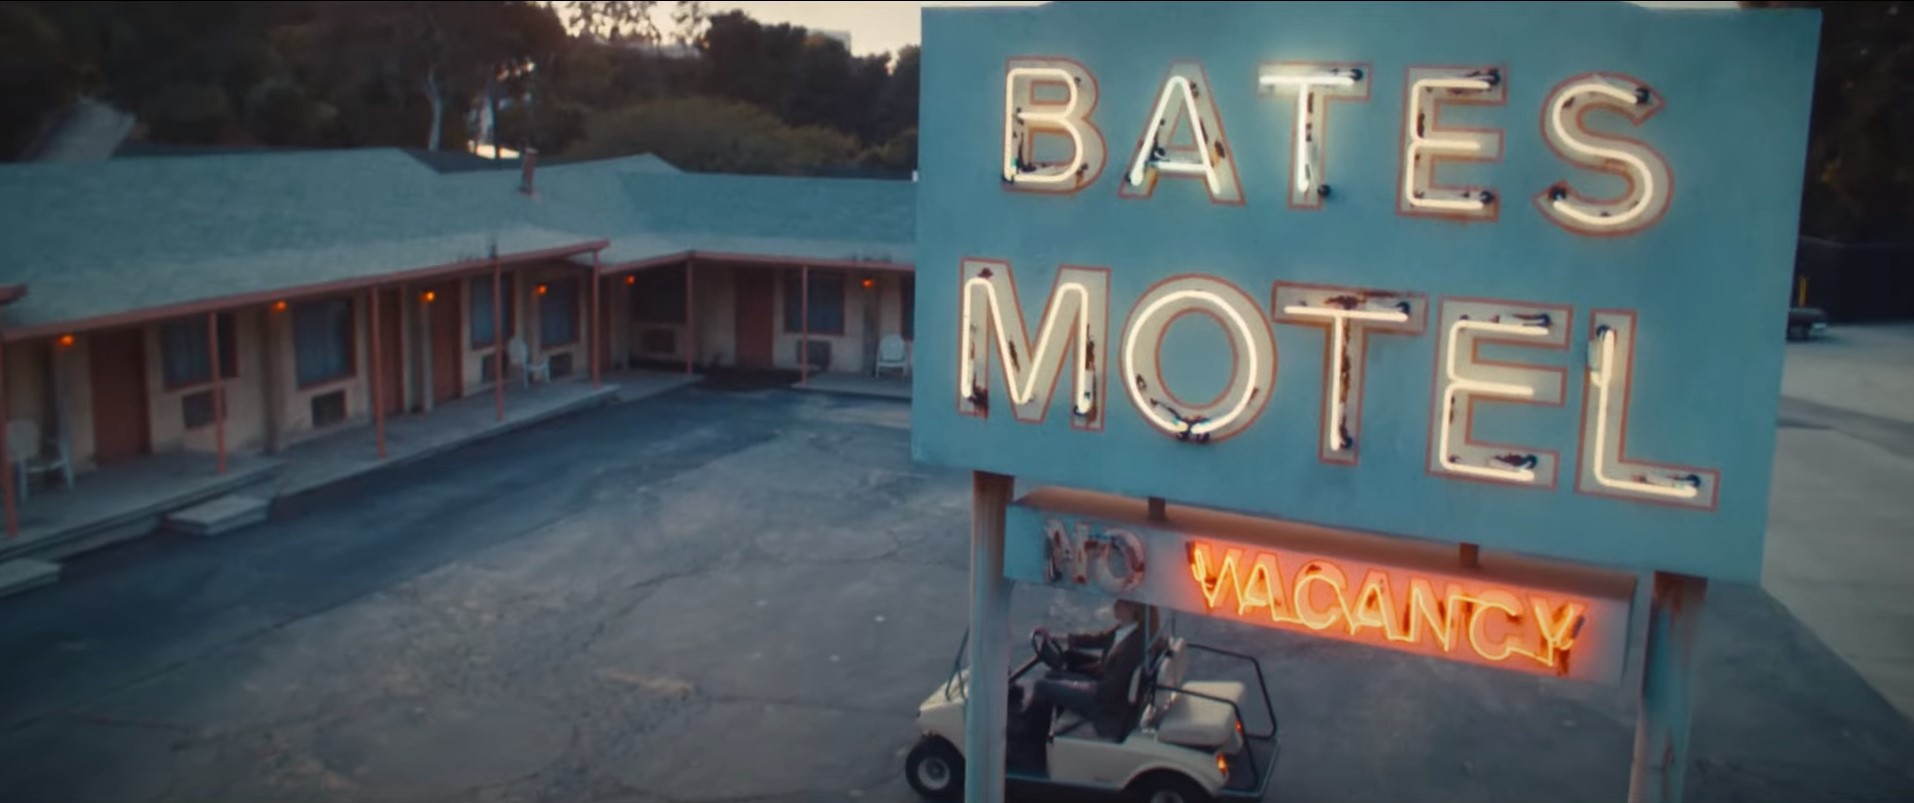 MaXXXine Bates Motel — объяснение отсылки к ужасам